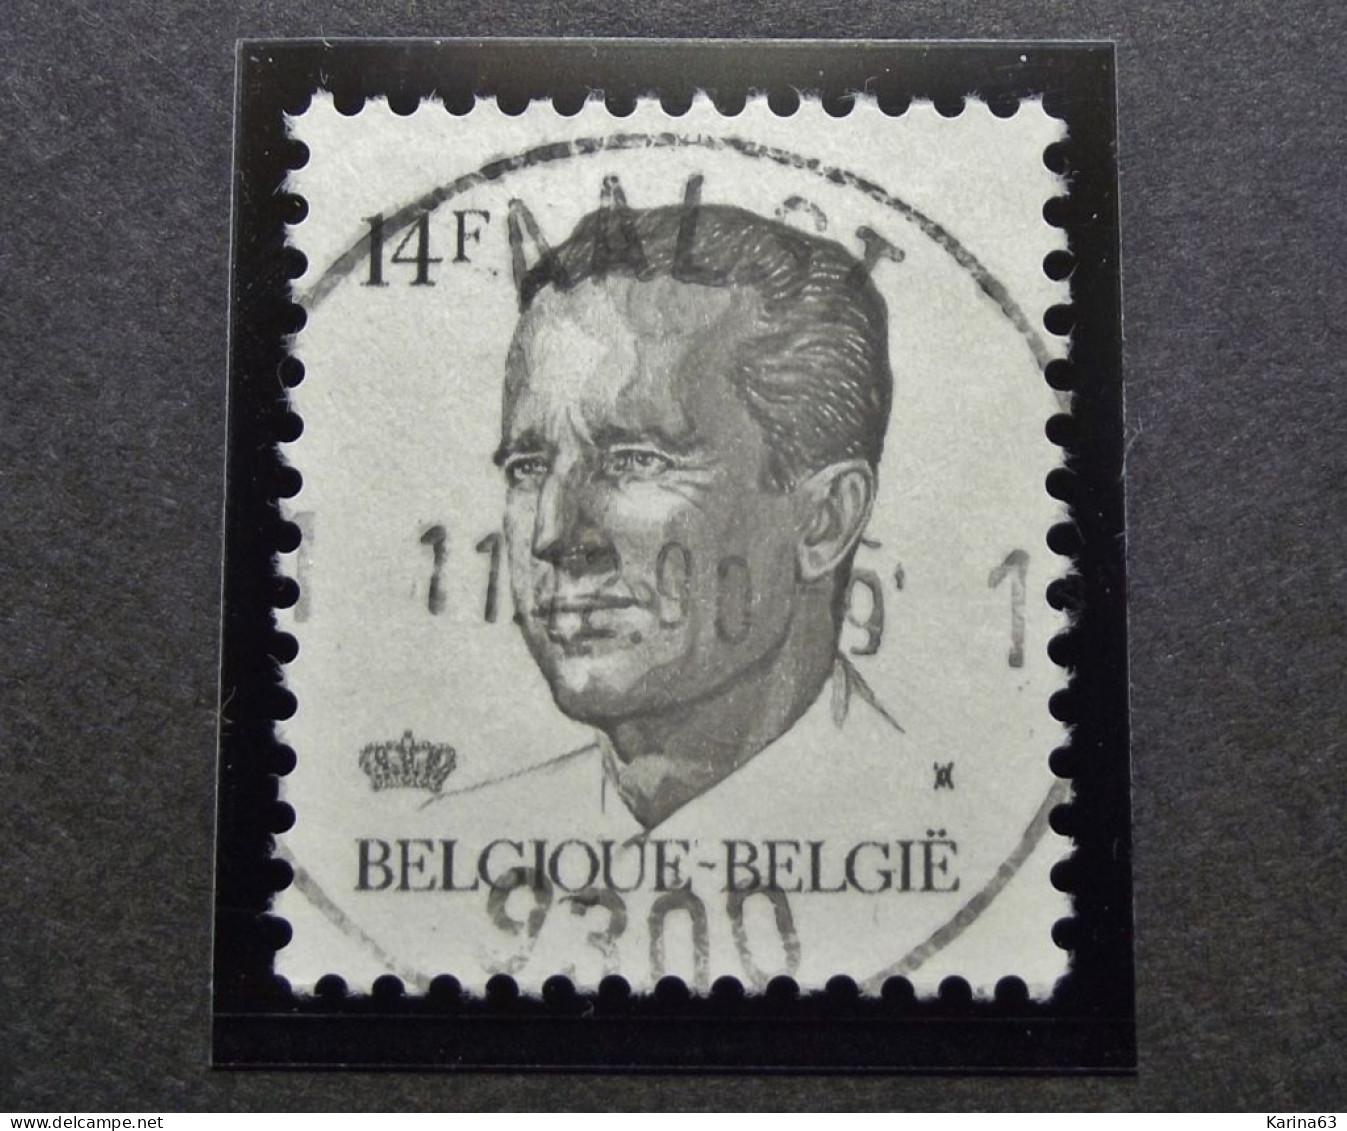 Belgie Belgique - 1990 -  OPB/COB  N° 2352 - 14 F  - Obl.  - AALST - 1990 - Used Stamps